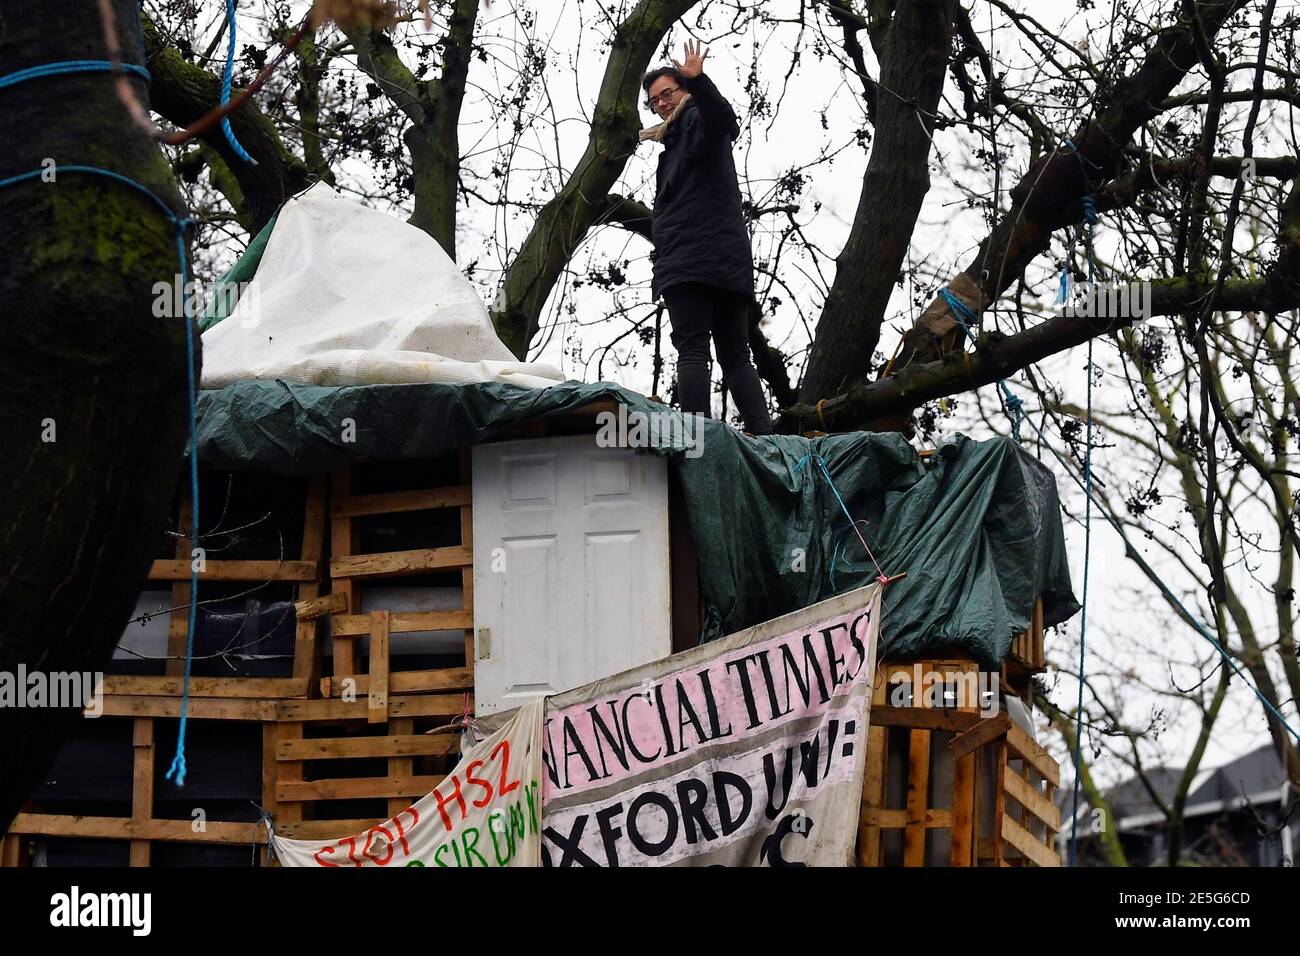 Un activista de la rebelión de extinción ondea sobre un árbol en un campamento improvisado, mientras otros manifestantes ocupan túneles bajo Euston Square Gardens para protestar contra el ferrocarril de alta velocidad HS2, en Londres, Gran Bretaña 28 de enero de 2021. REUTERS/Toby Melville Foto de stock